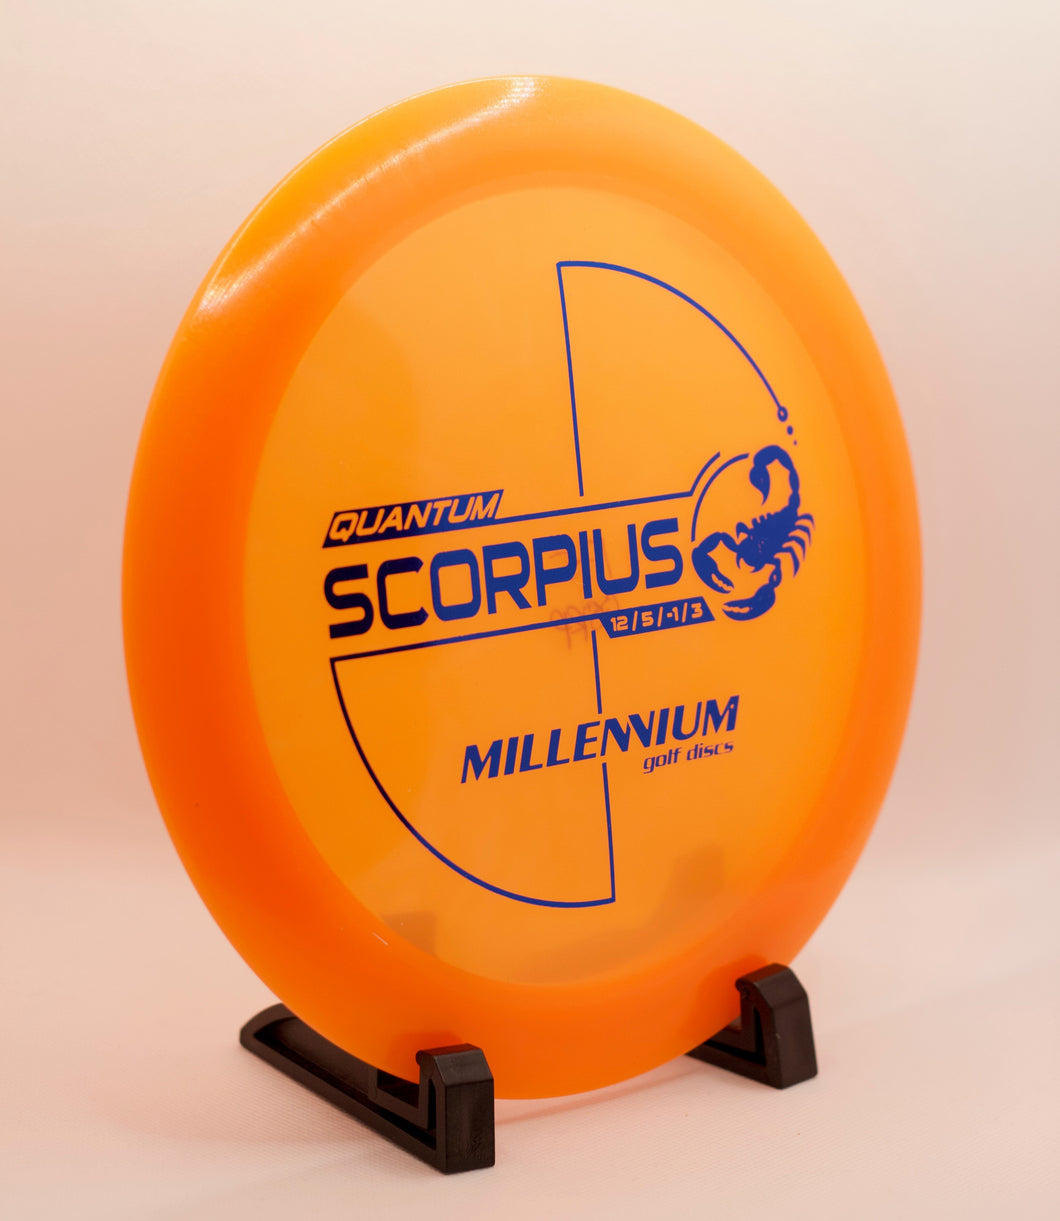 Millennium Quantum Scorpius Distance Driver